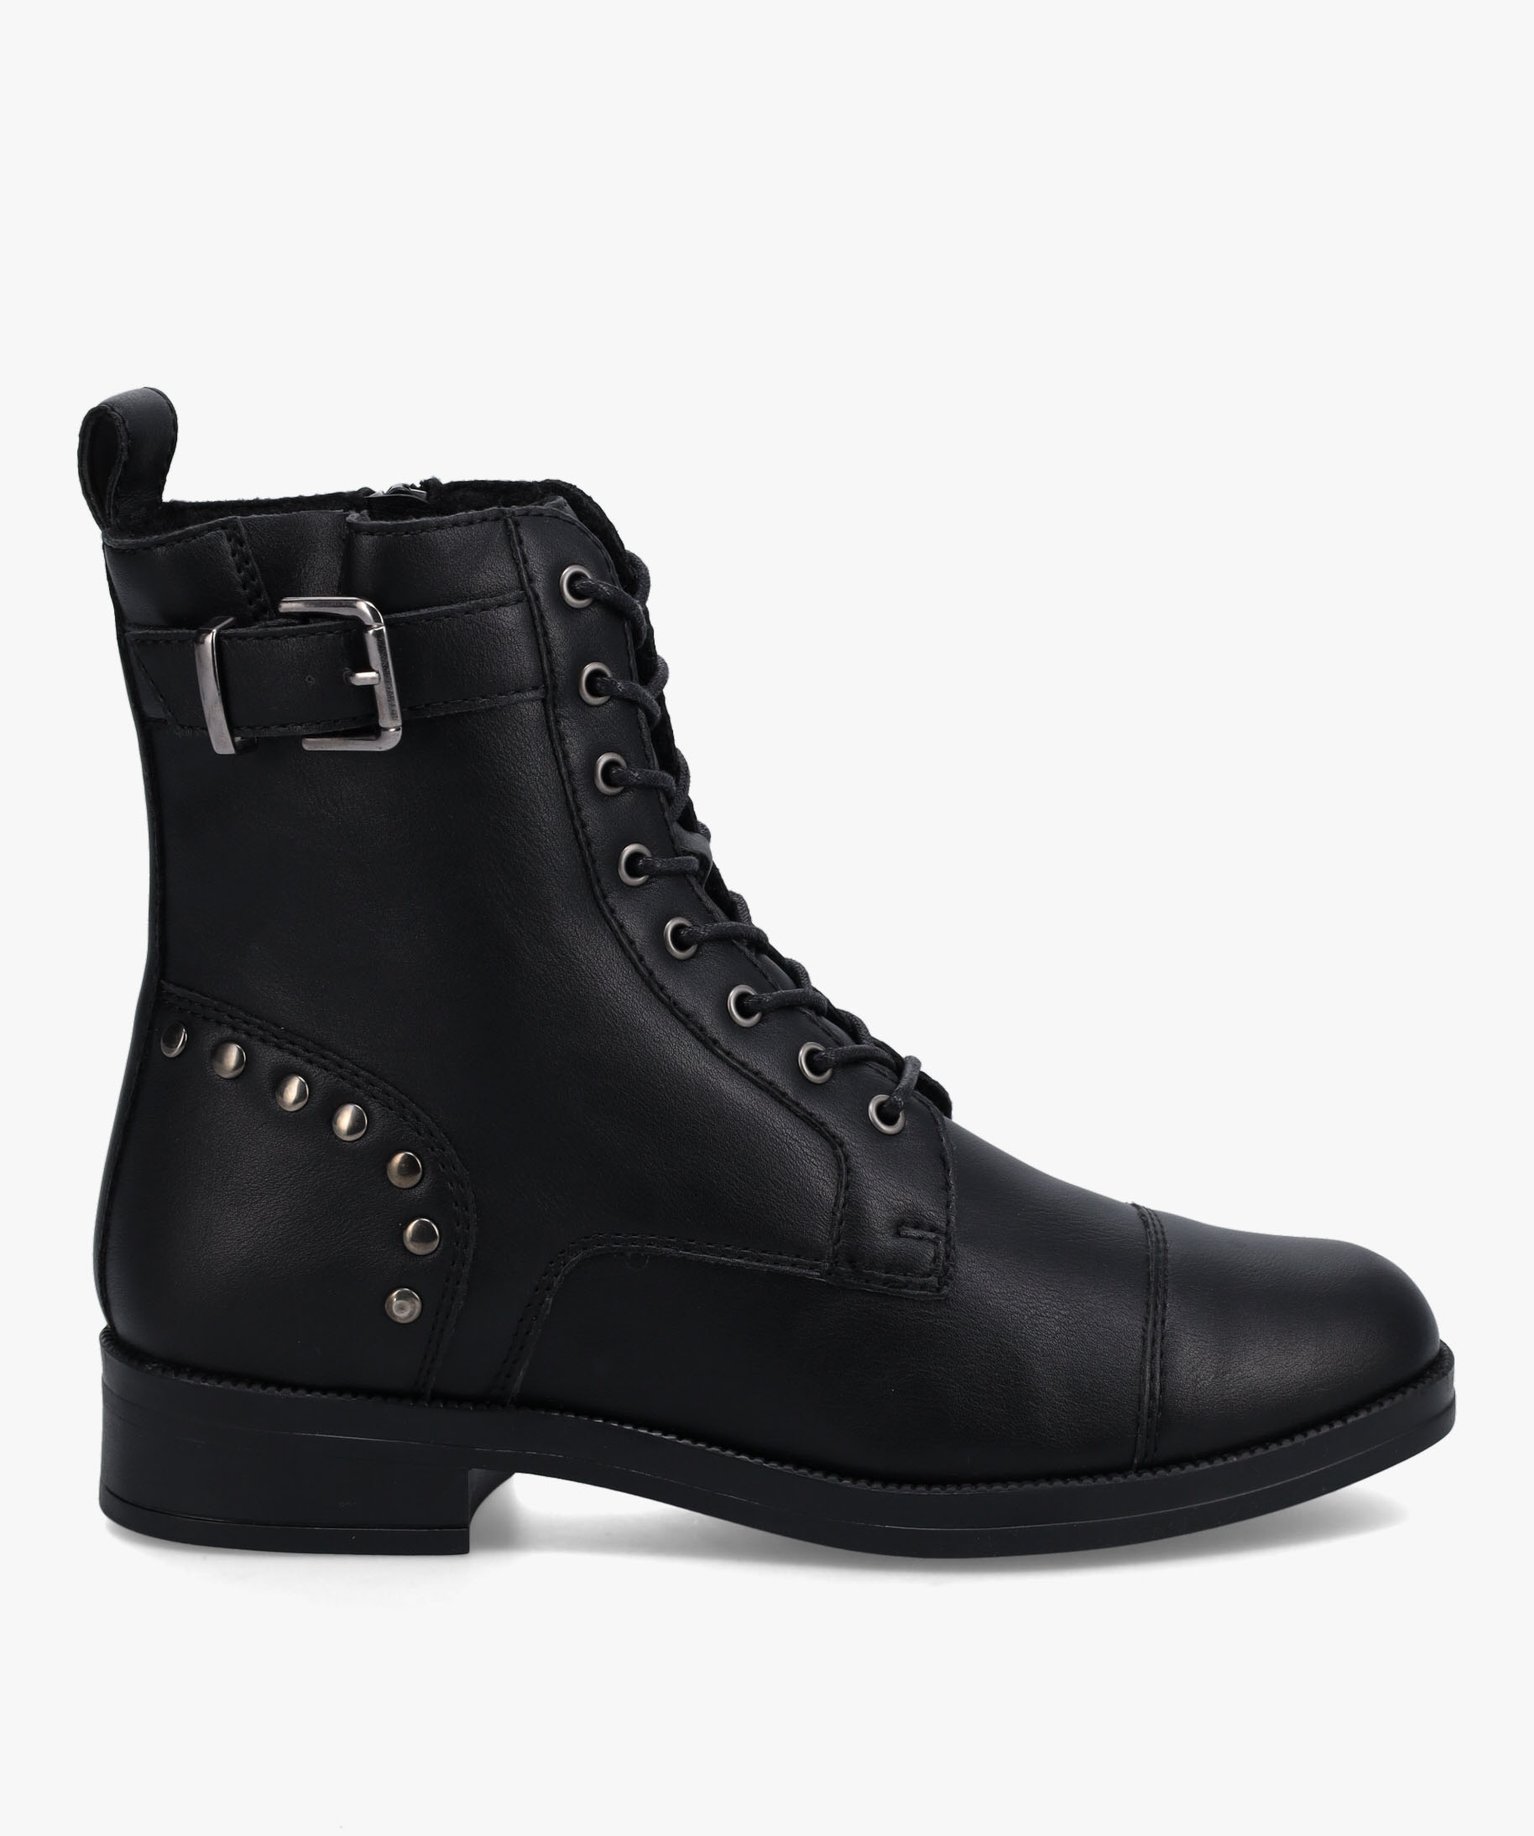 boots femme unies style rock fermeture lacets et zip noir